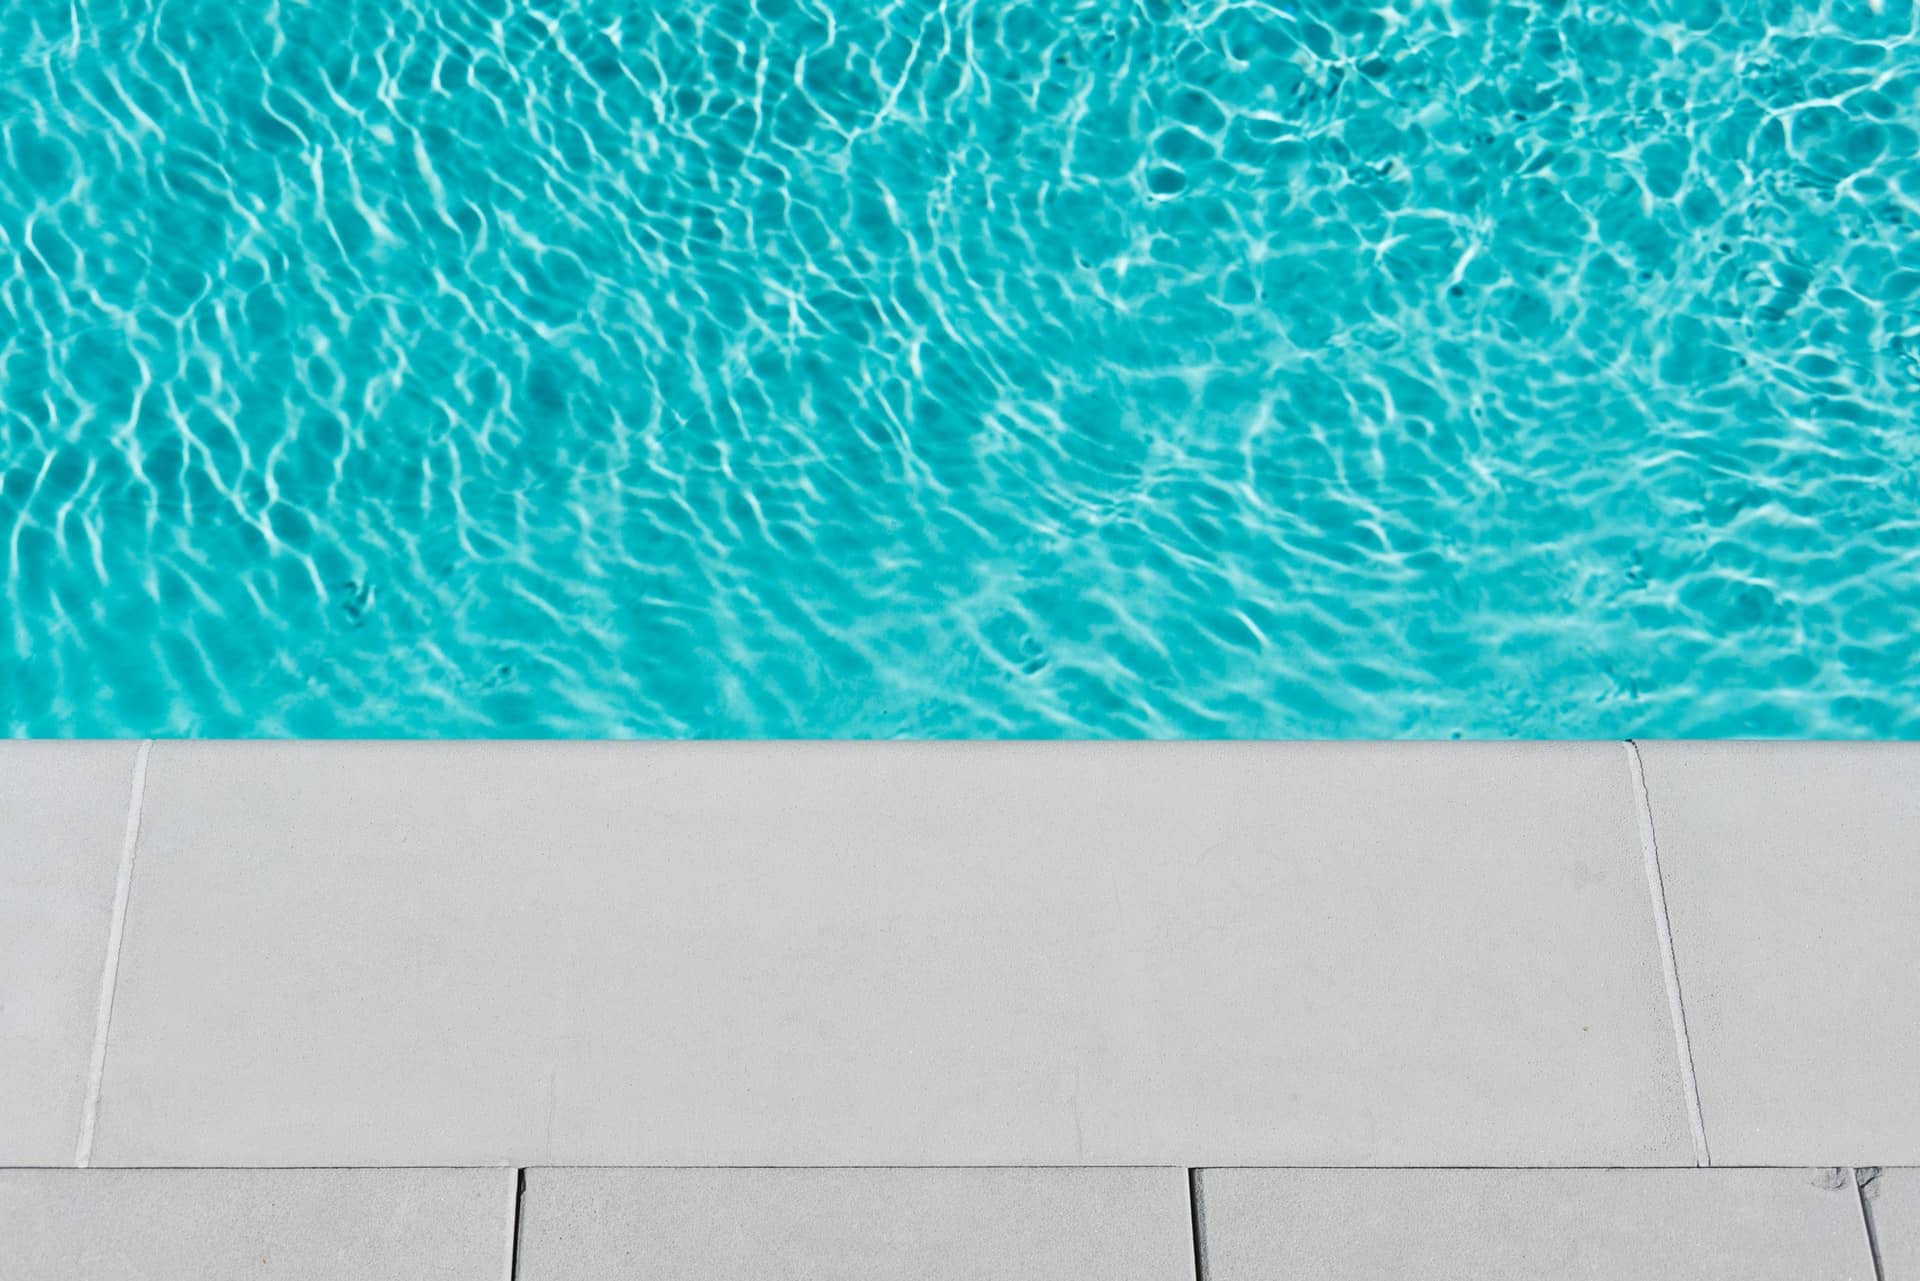 réduire consommation électrique piscine